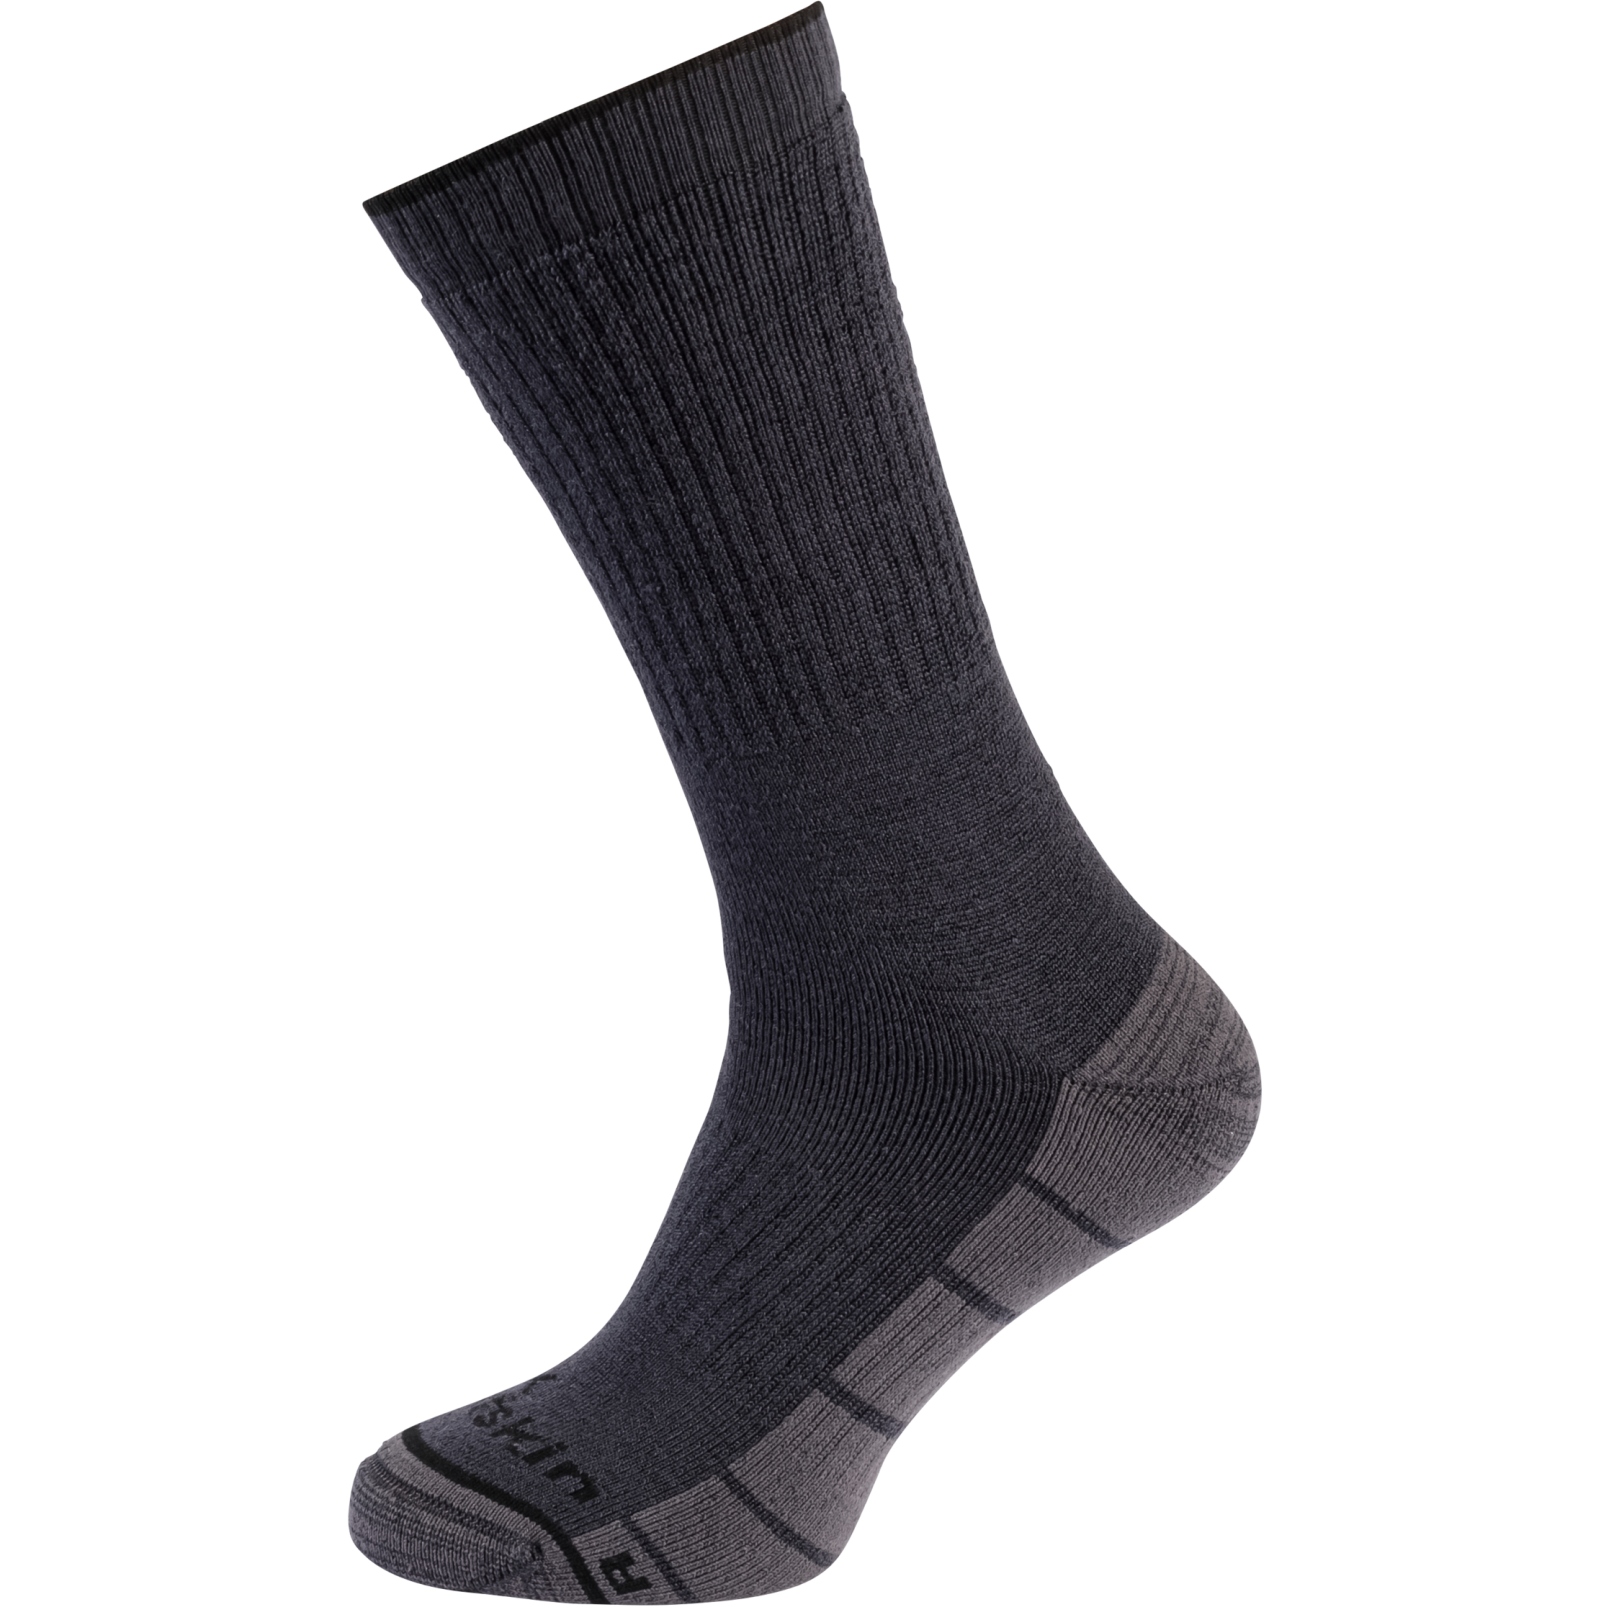 Produktbild von Jack Wolfskin Trekking Merino Classic Cut Socken - dark grey